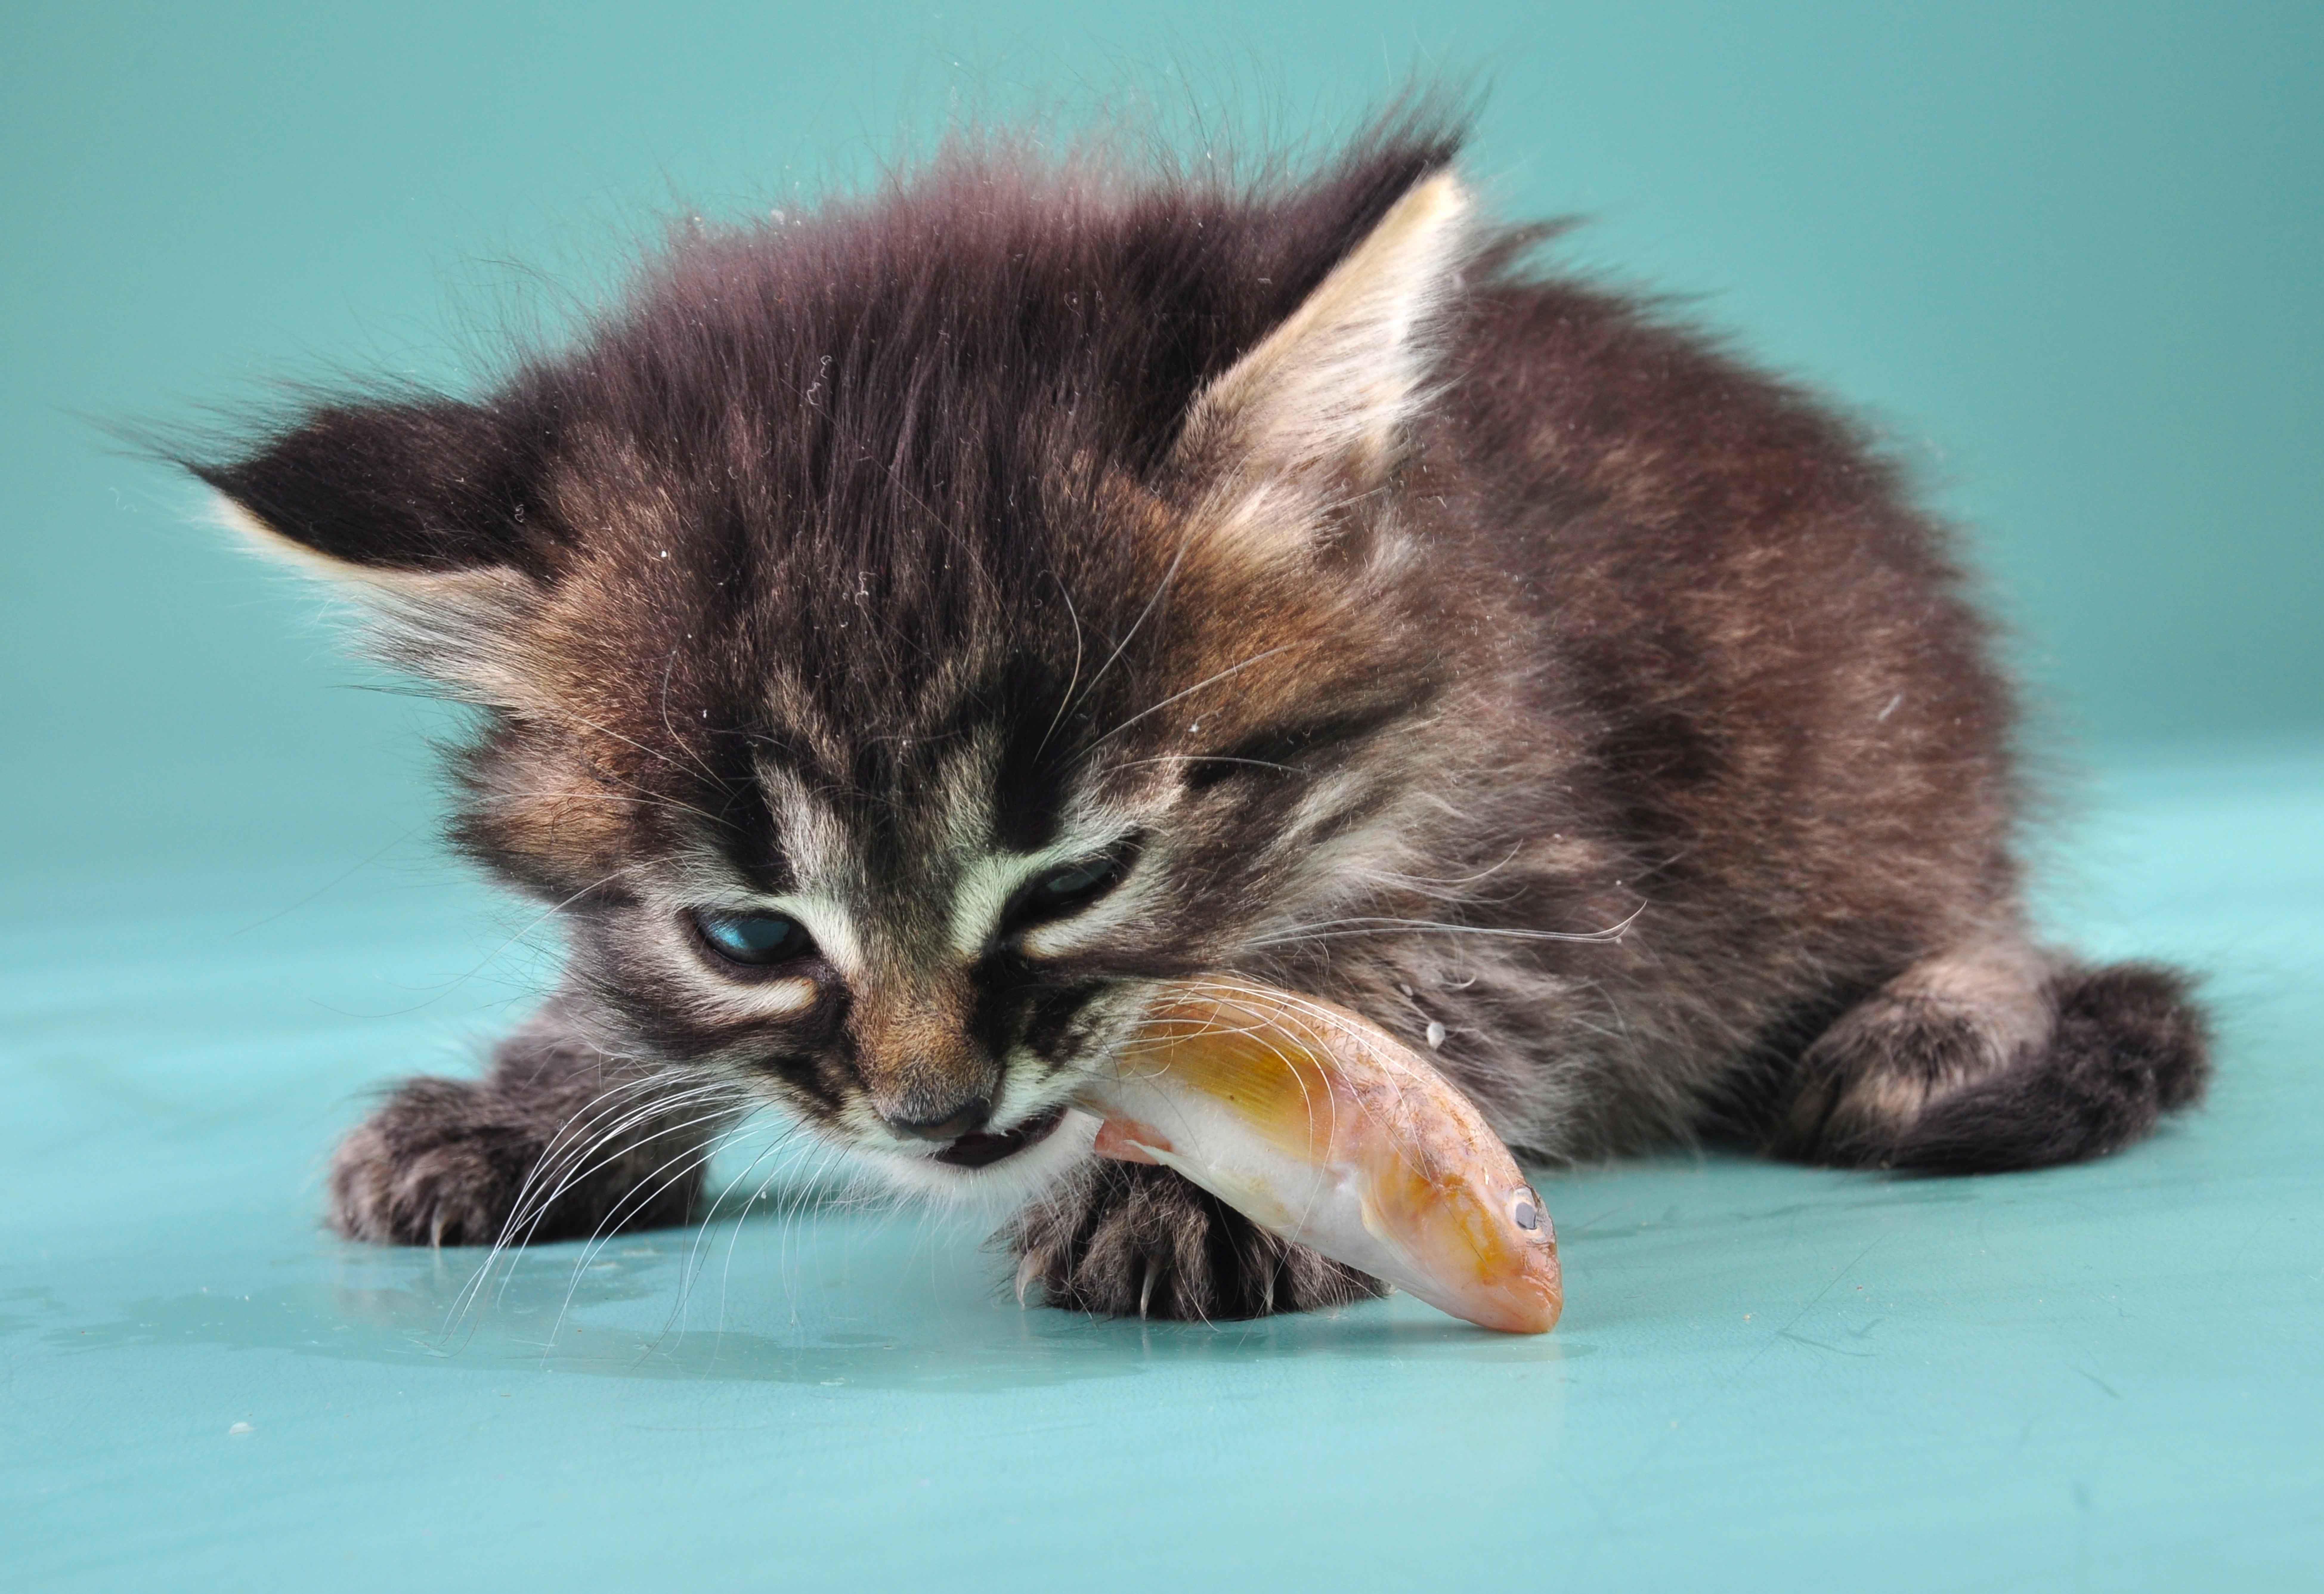 Vegan Diet Nearly Kills Kitten